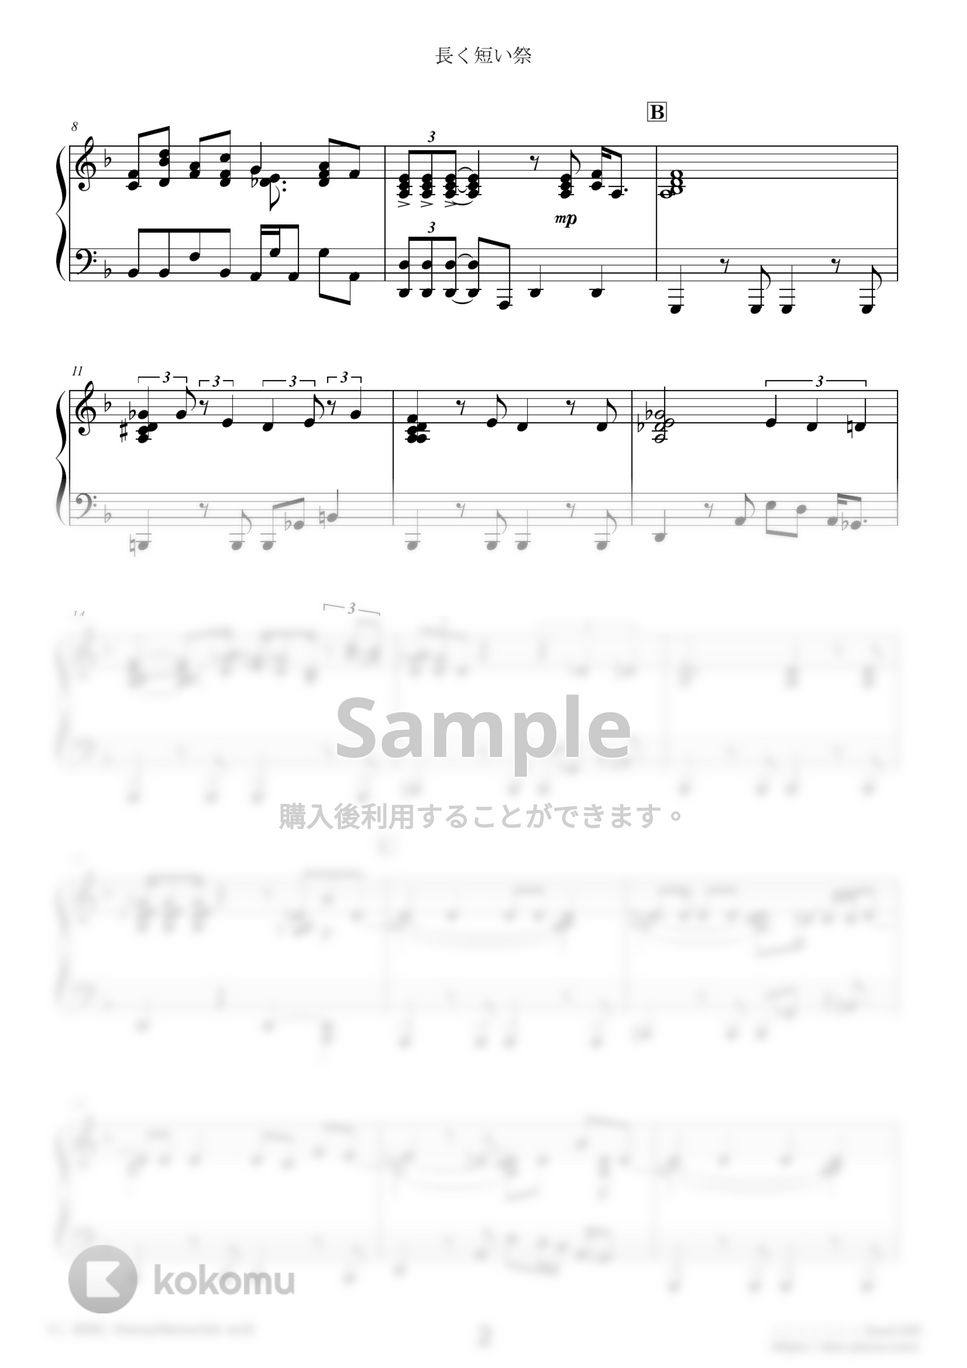 椎名林檎 - 長く短い祭 (難易度：★★★★★) by Dさん